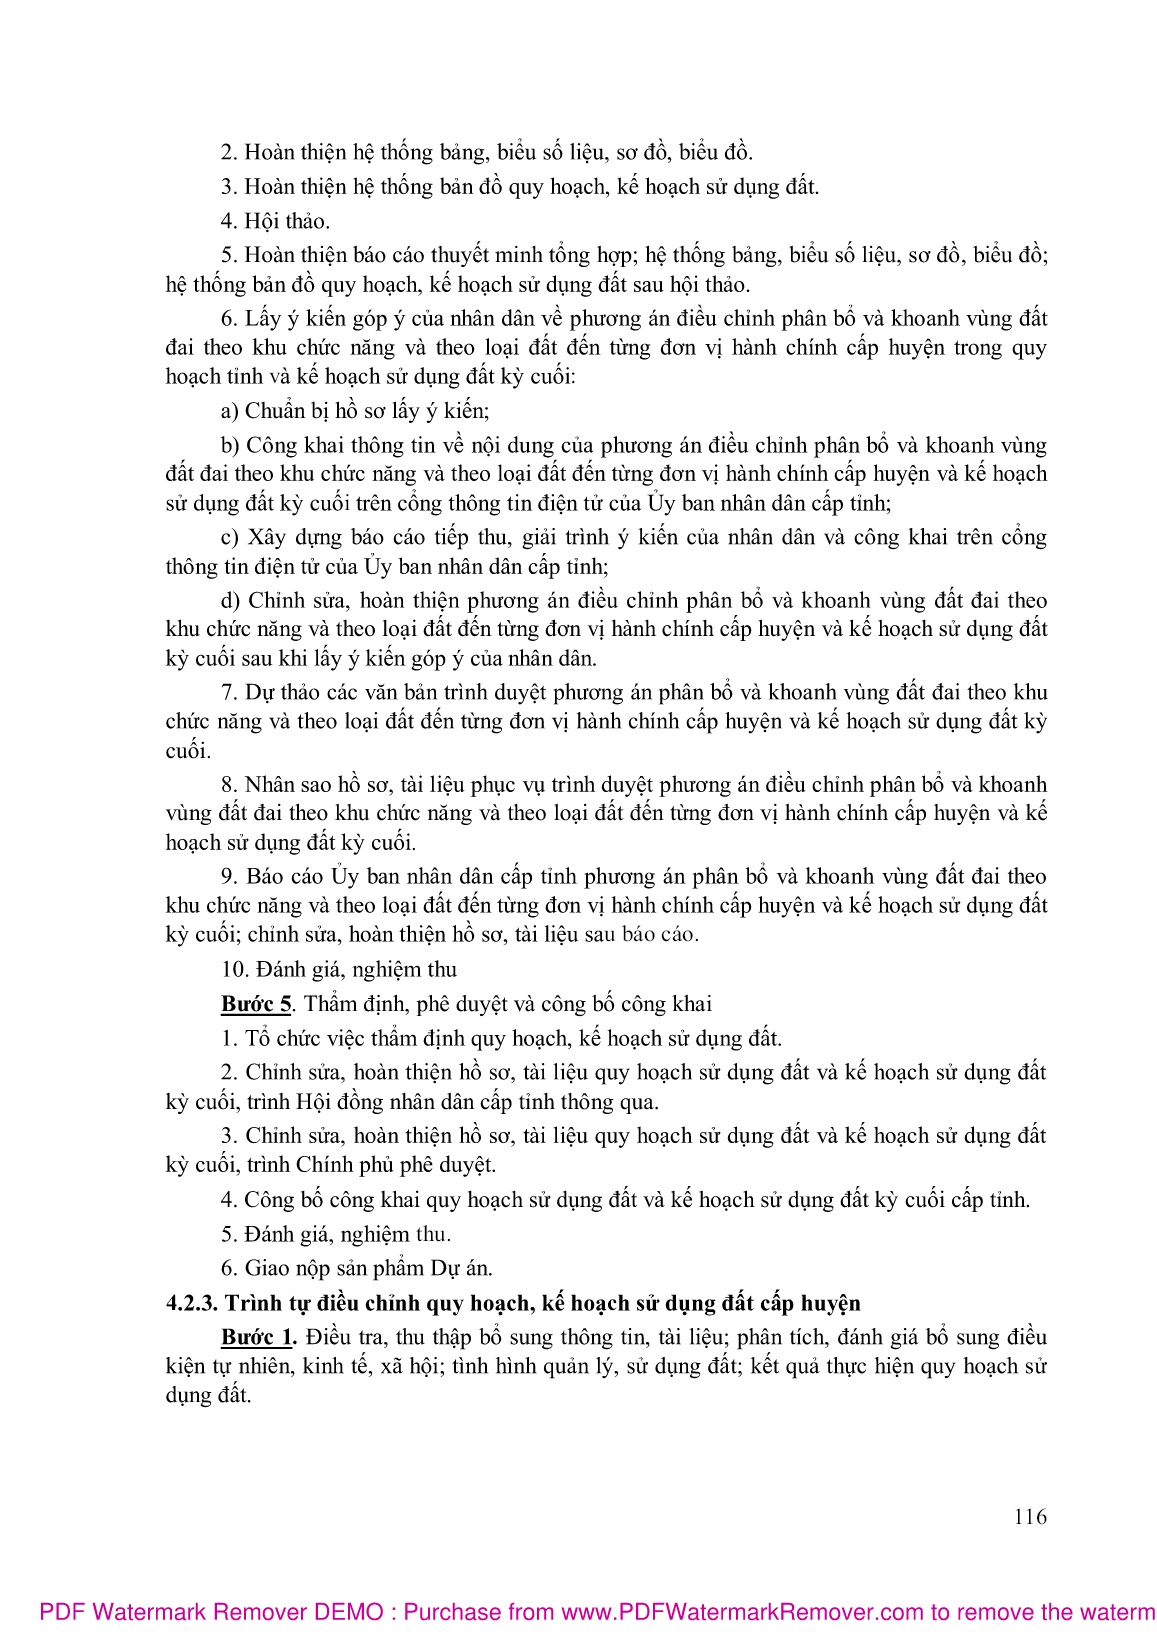 Bài giảng Quy hoạch sử dụng đất (Phần 2) trang 7